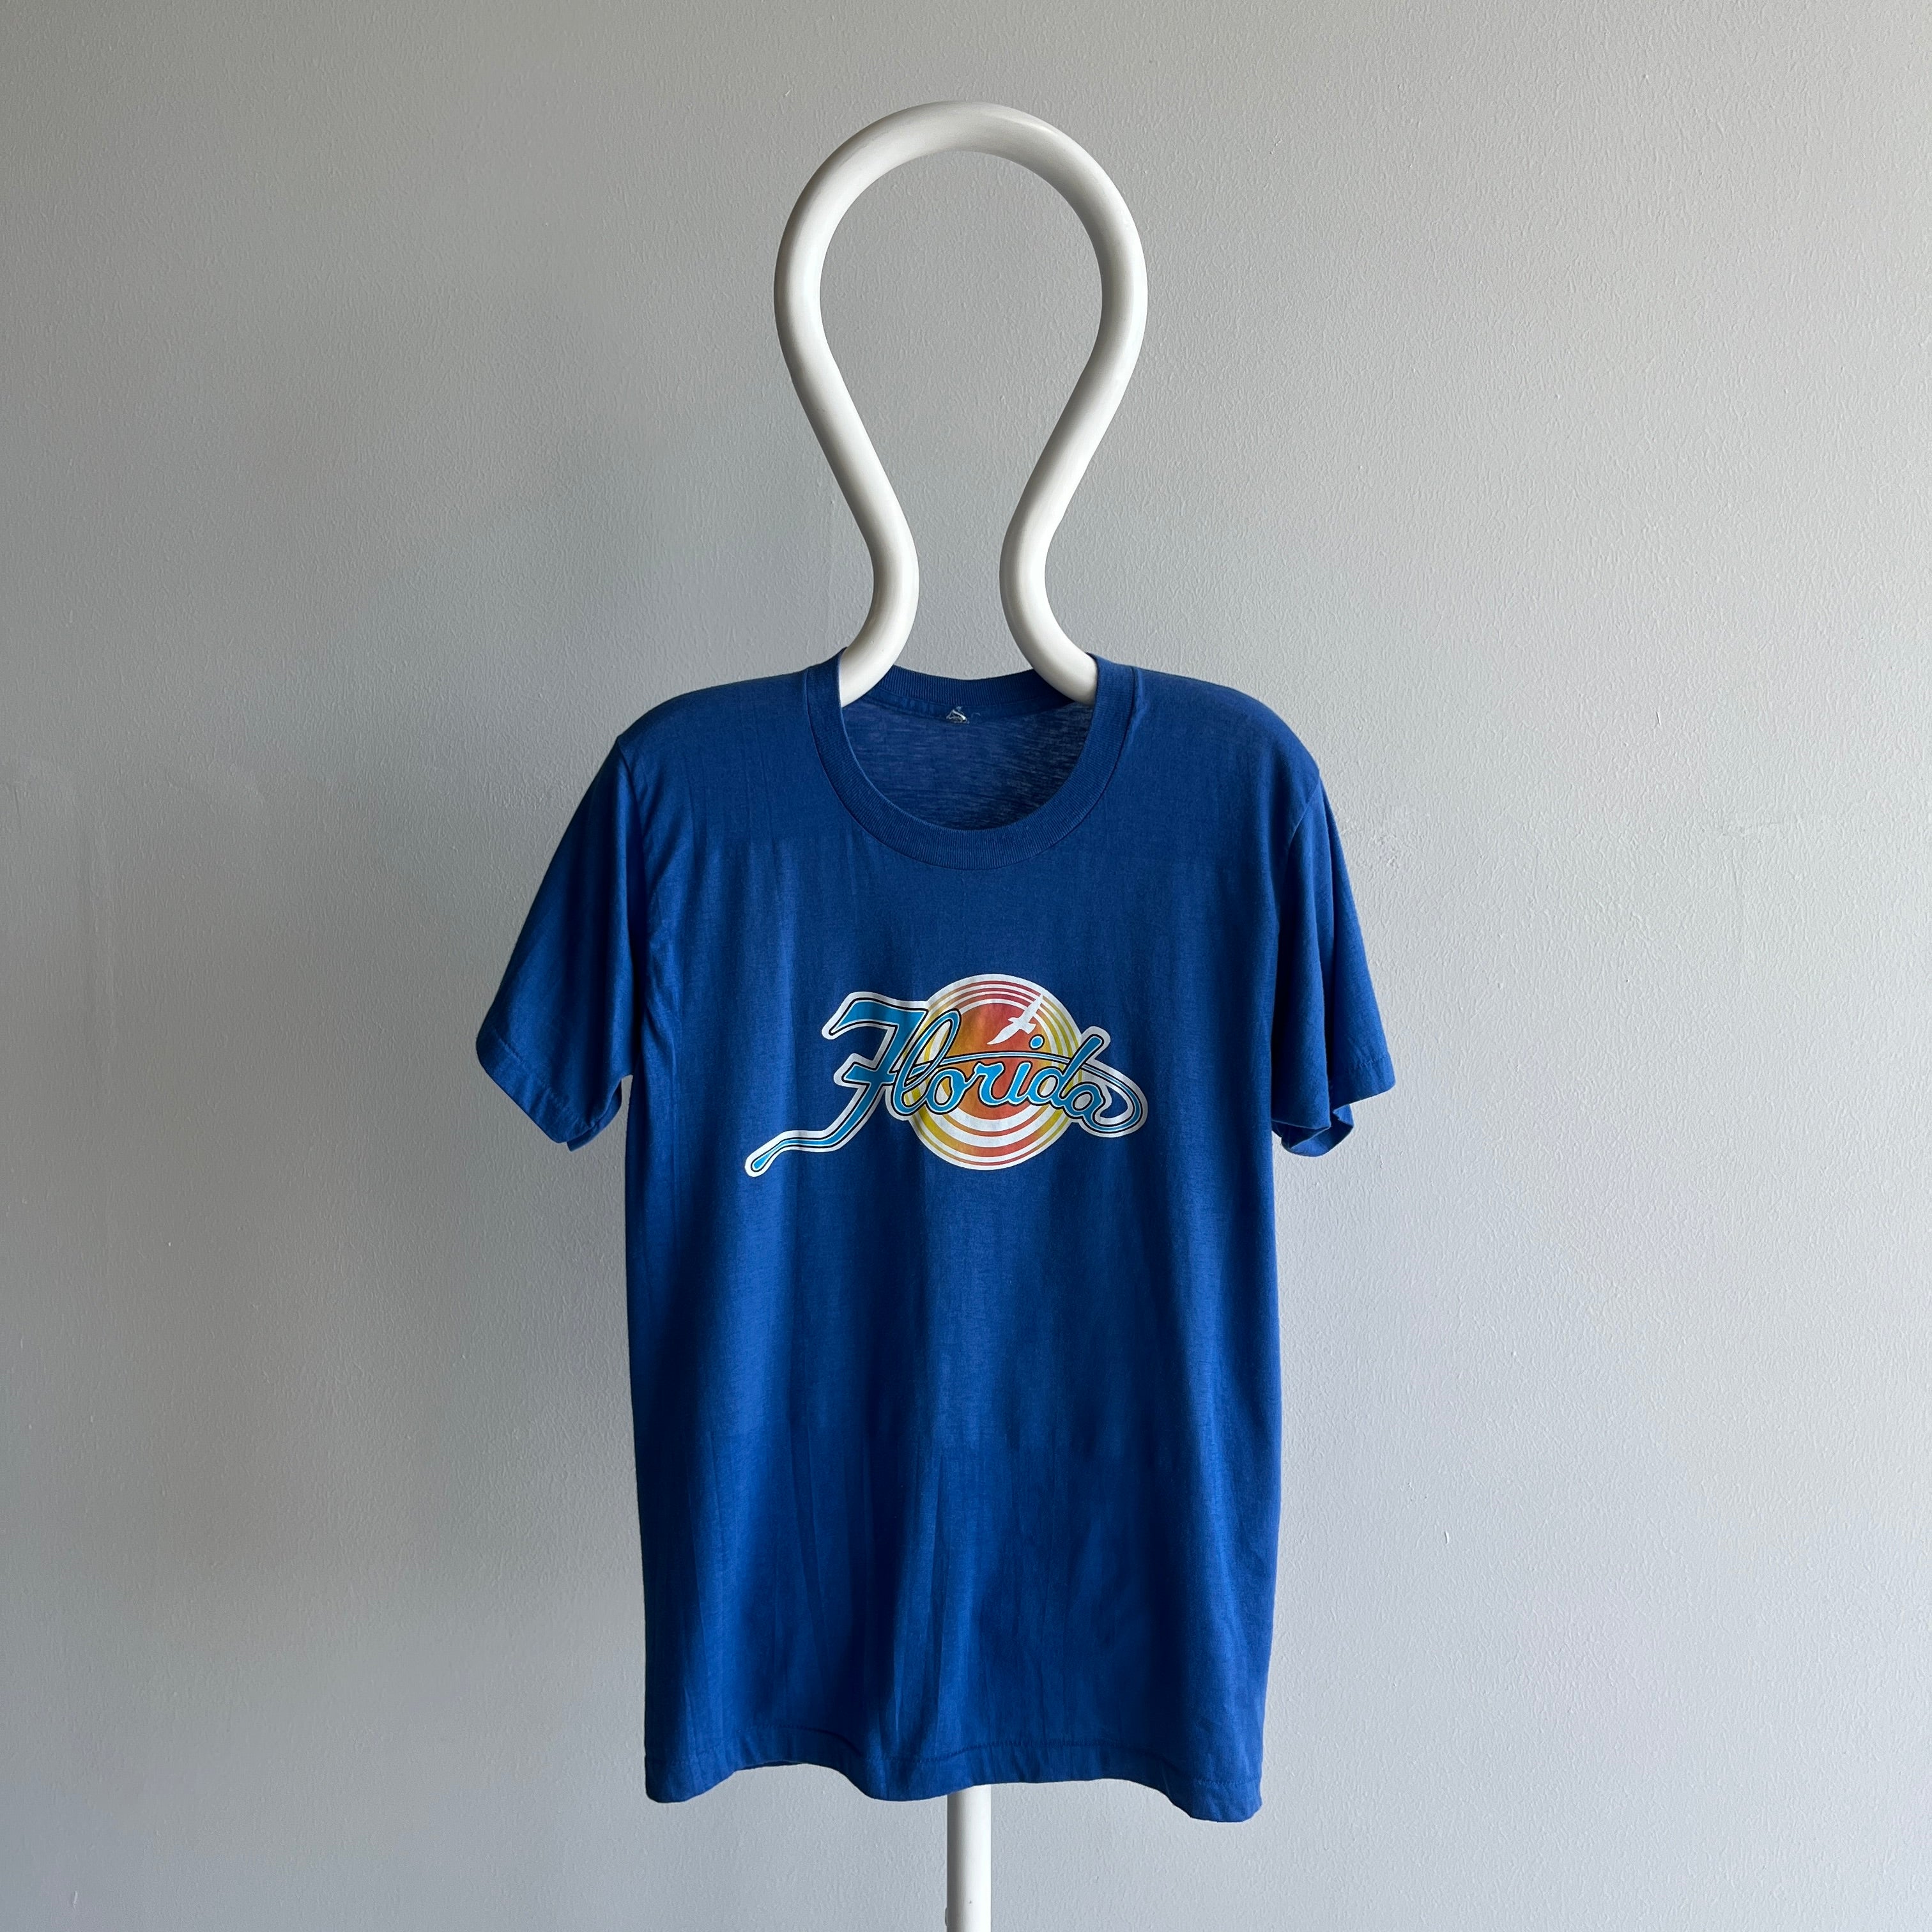 1980s Florida Tourist T-Shirt